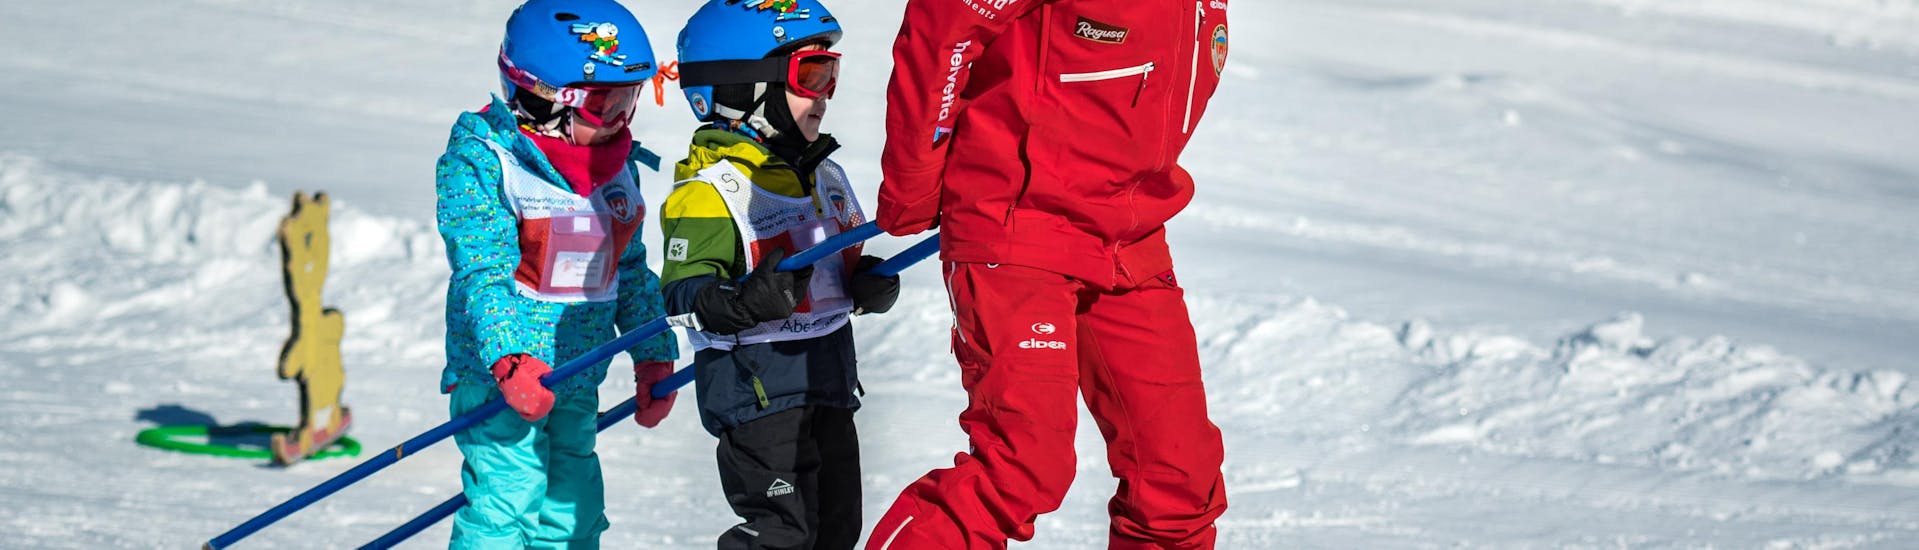 Un instructor de esquí de la Swiss Ski School Grindelwald lleva a dos niños pequeños detrás de él durante una clase particular de esquí para niños de todos los niveles.